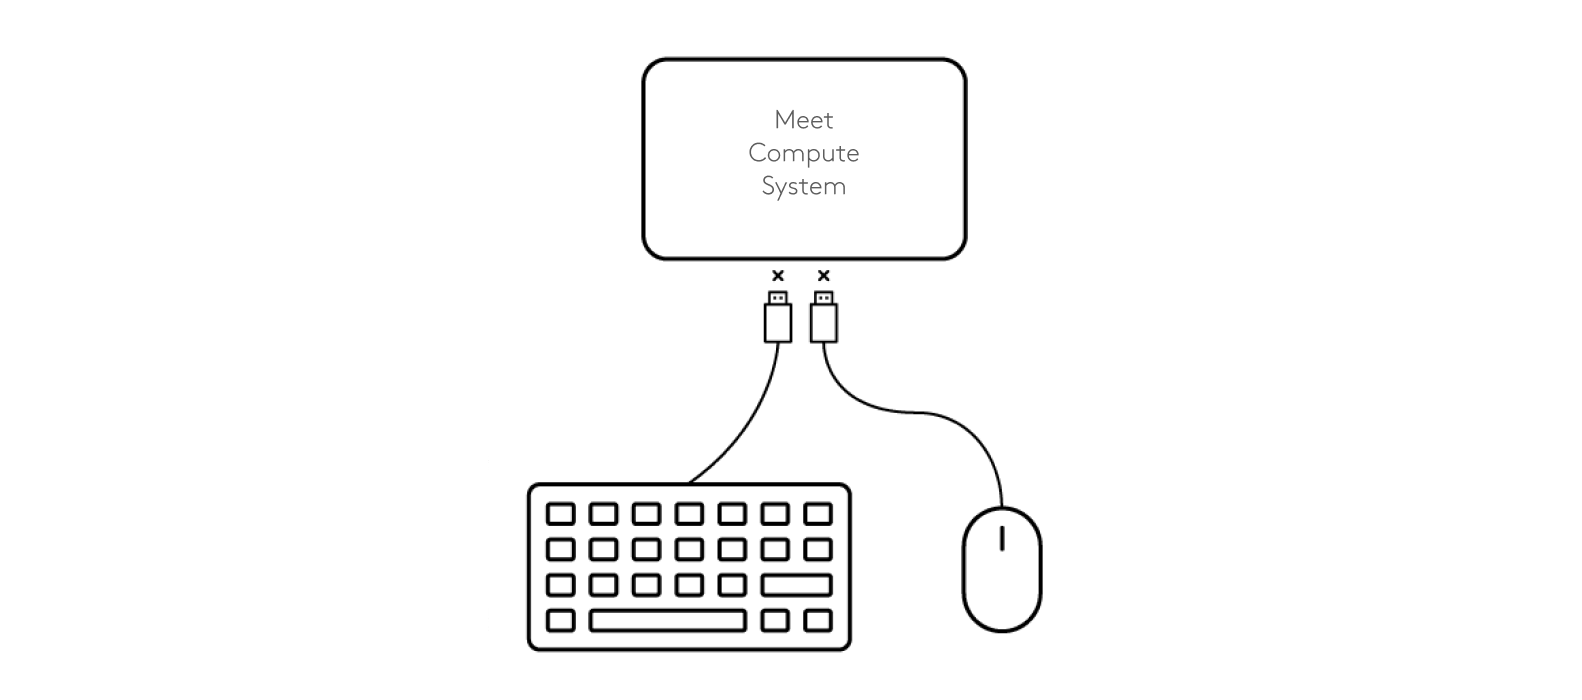 Diagrama de desconexión de teclado y ratón de Meet Compute System